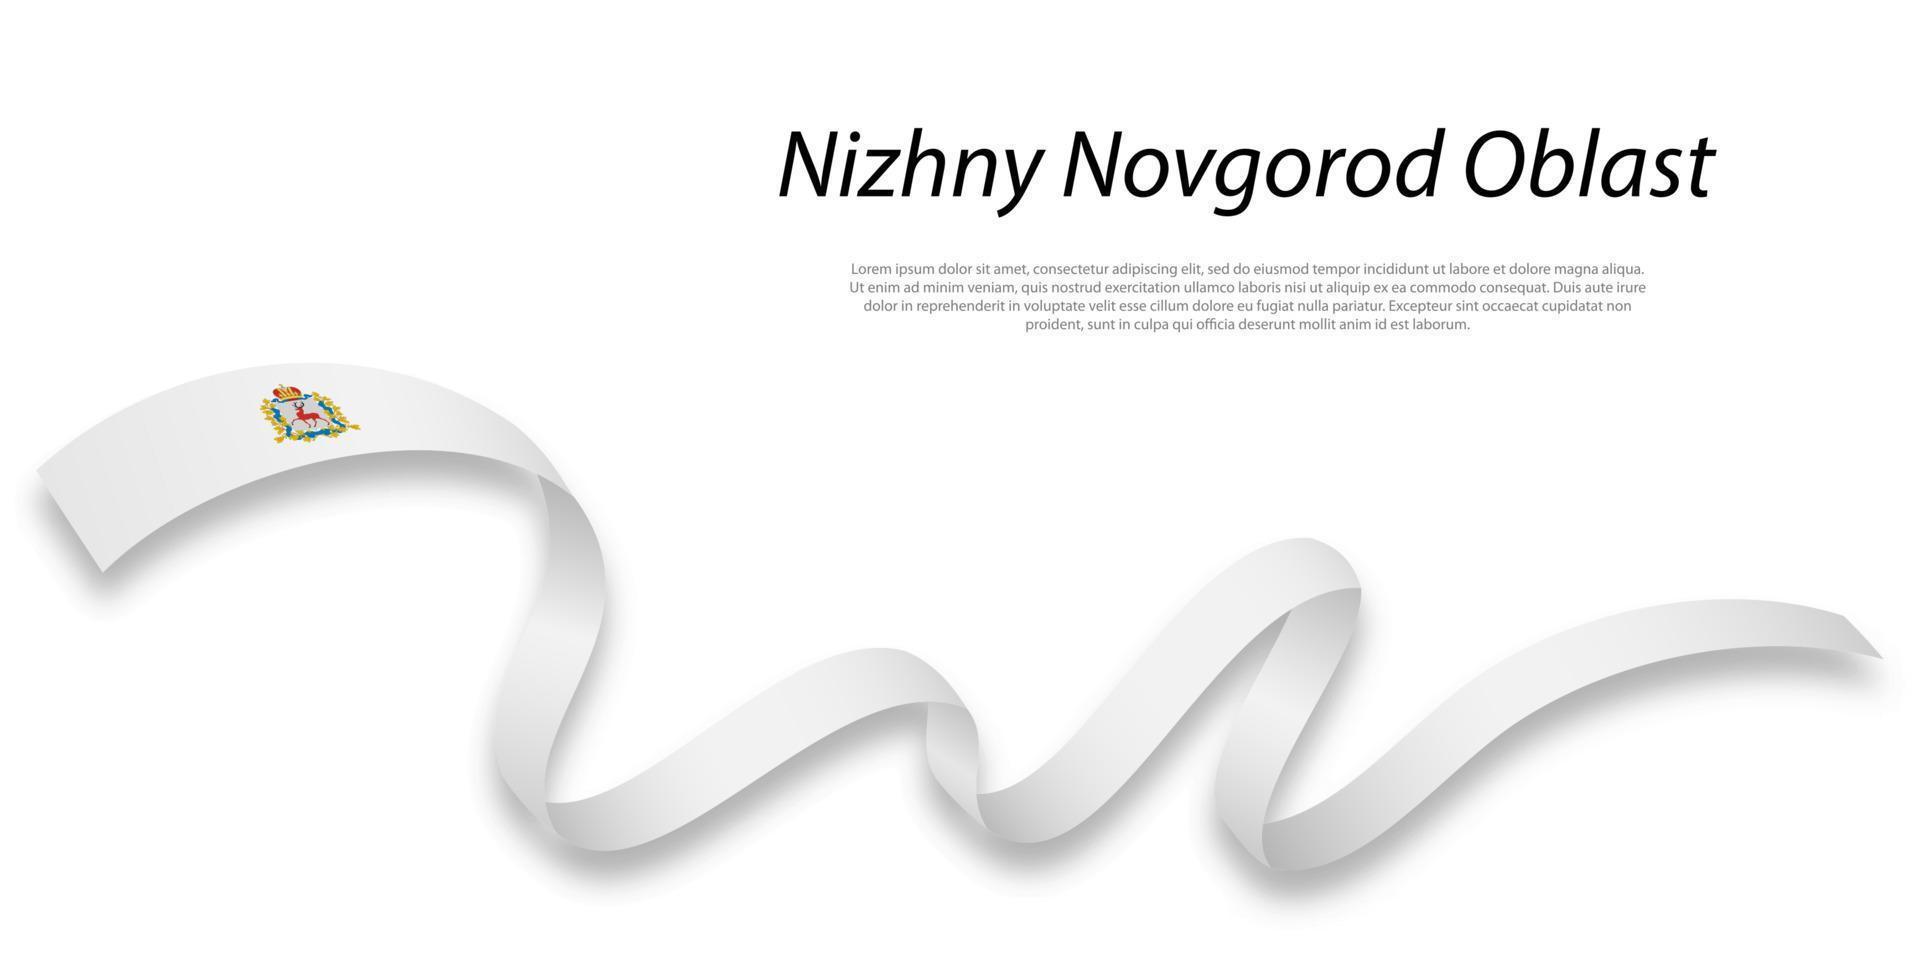 ondulación cinta o raya con bandera de nizhny novgorod oblast vector